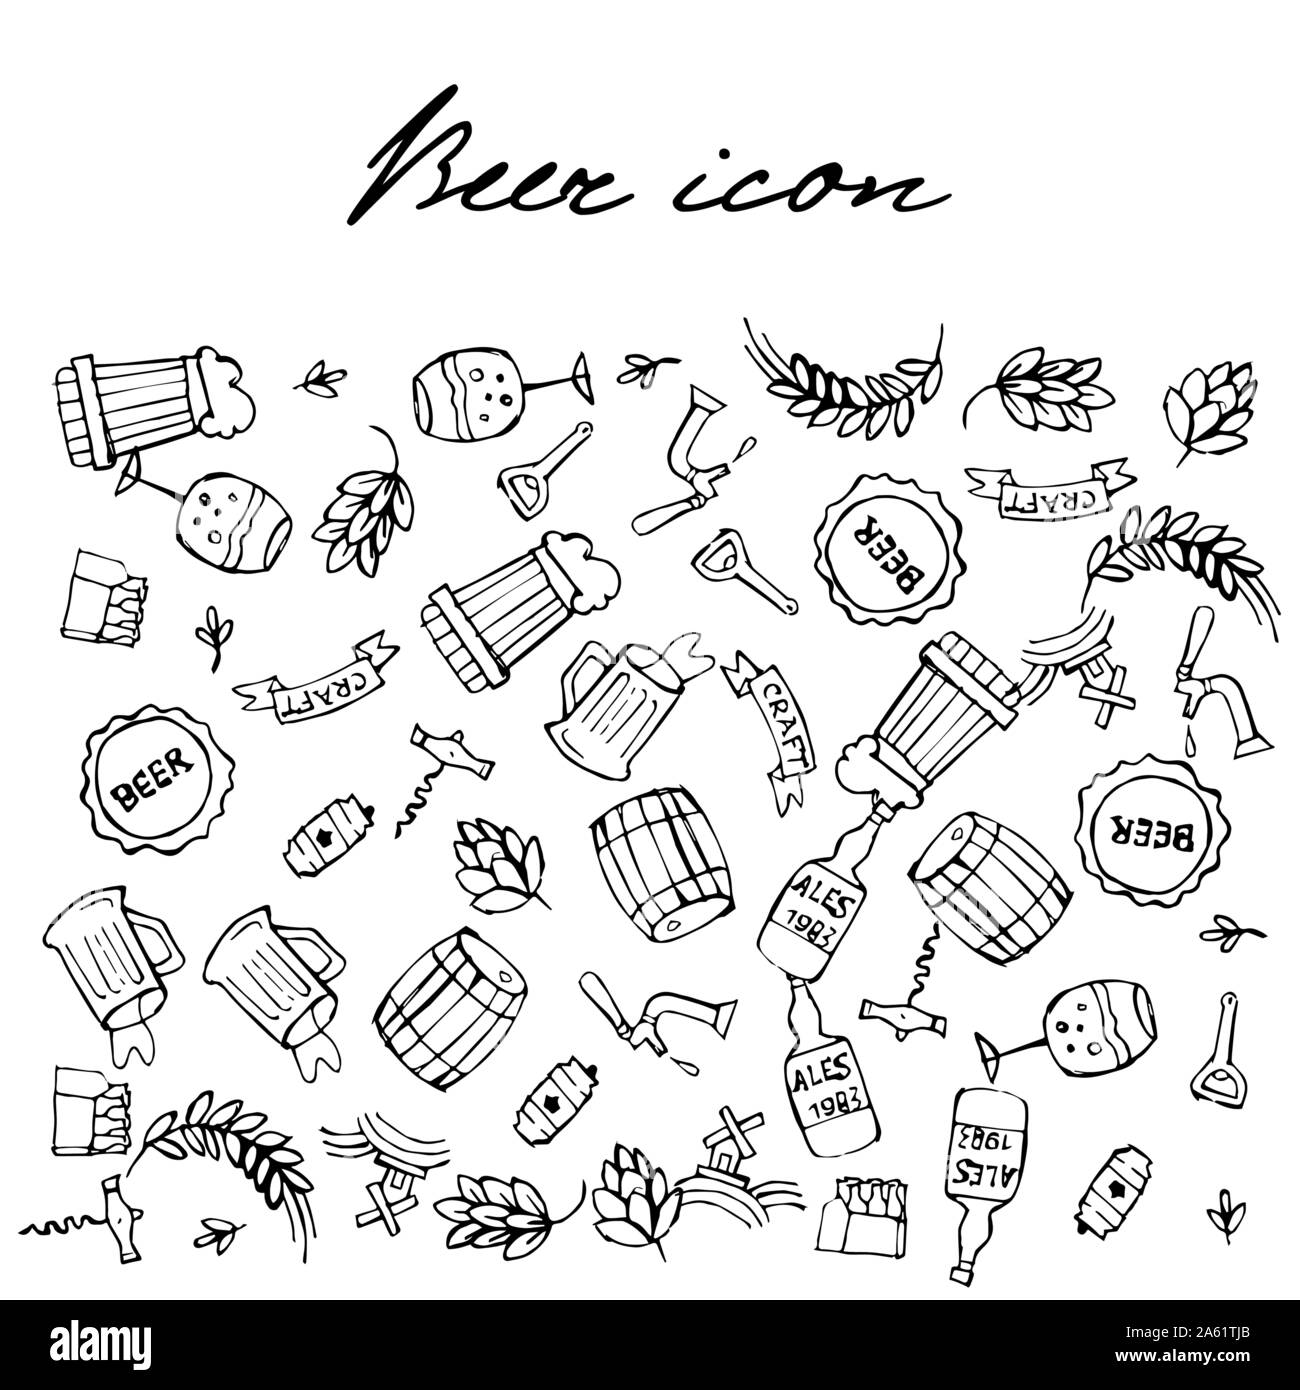 Ensemble d'icônes doodle connexes de la bière. Des croquis dessinés à la main. Vector illustration isolé. Illustration de Vecteur